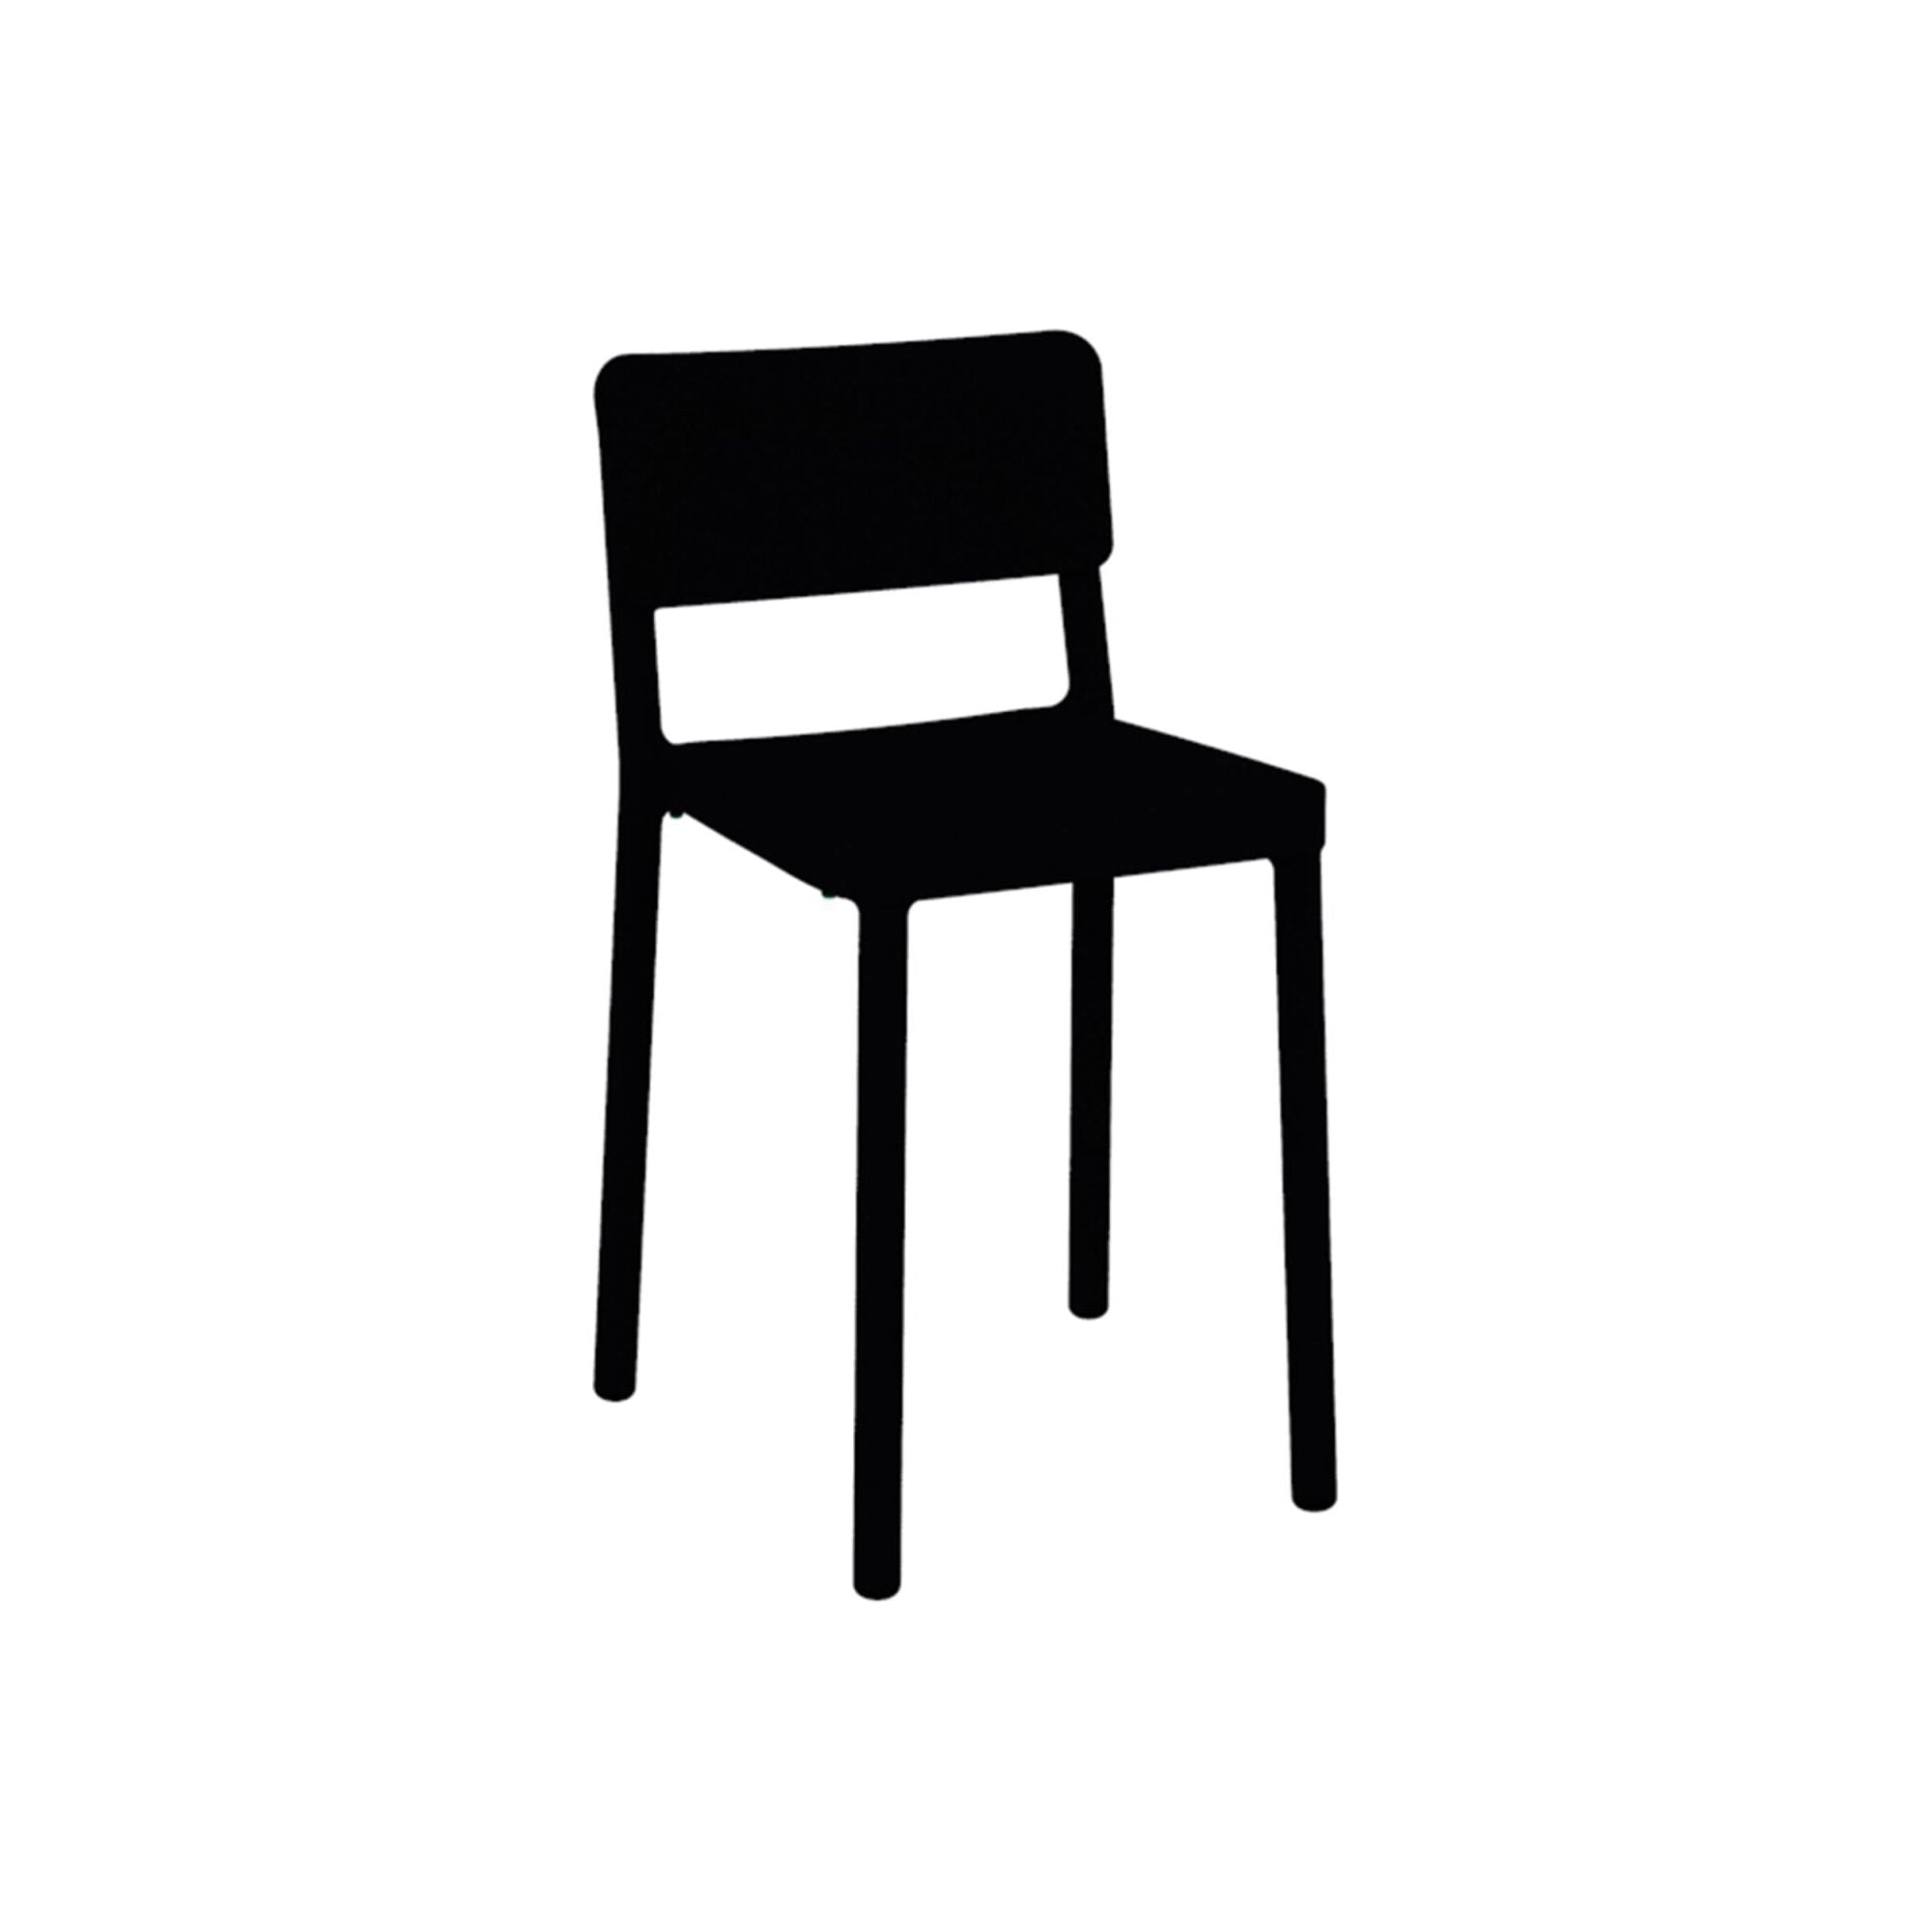 Resol lisboa low chair inside, black outside